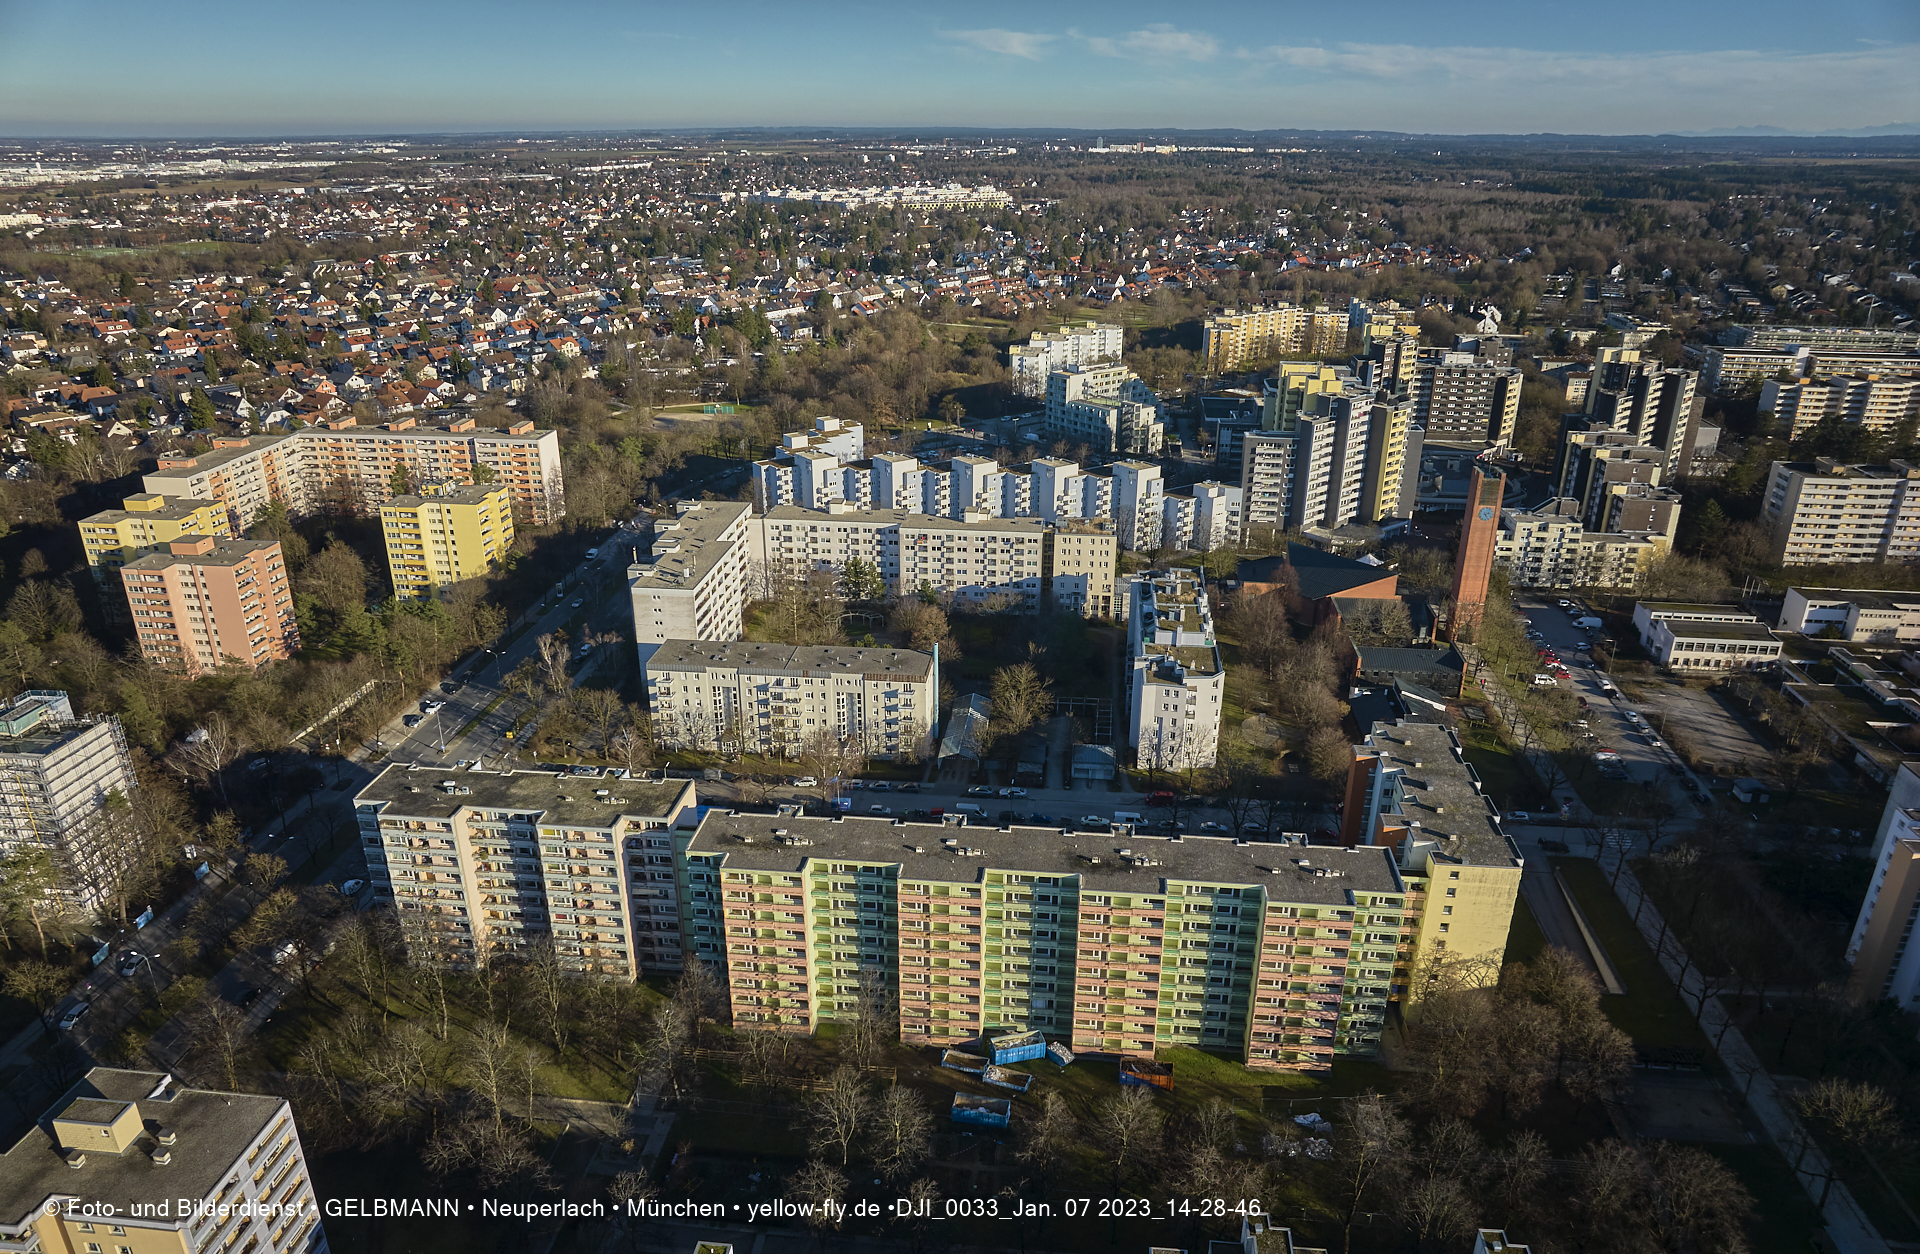 07.01.2023 - Luftbilder von der Baustelle Karl-Marx-Ring 11-21 und Kurt-Eisner-Straße in Neuperlach